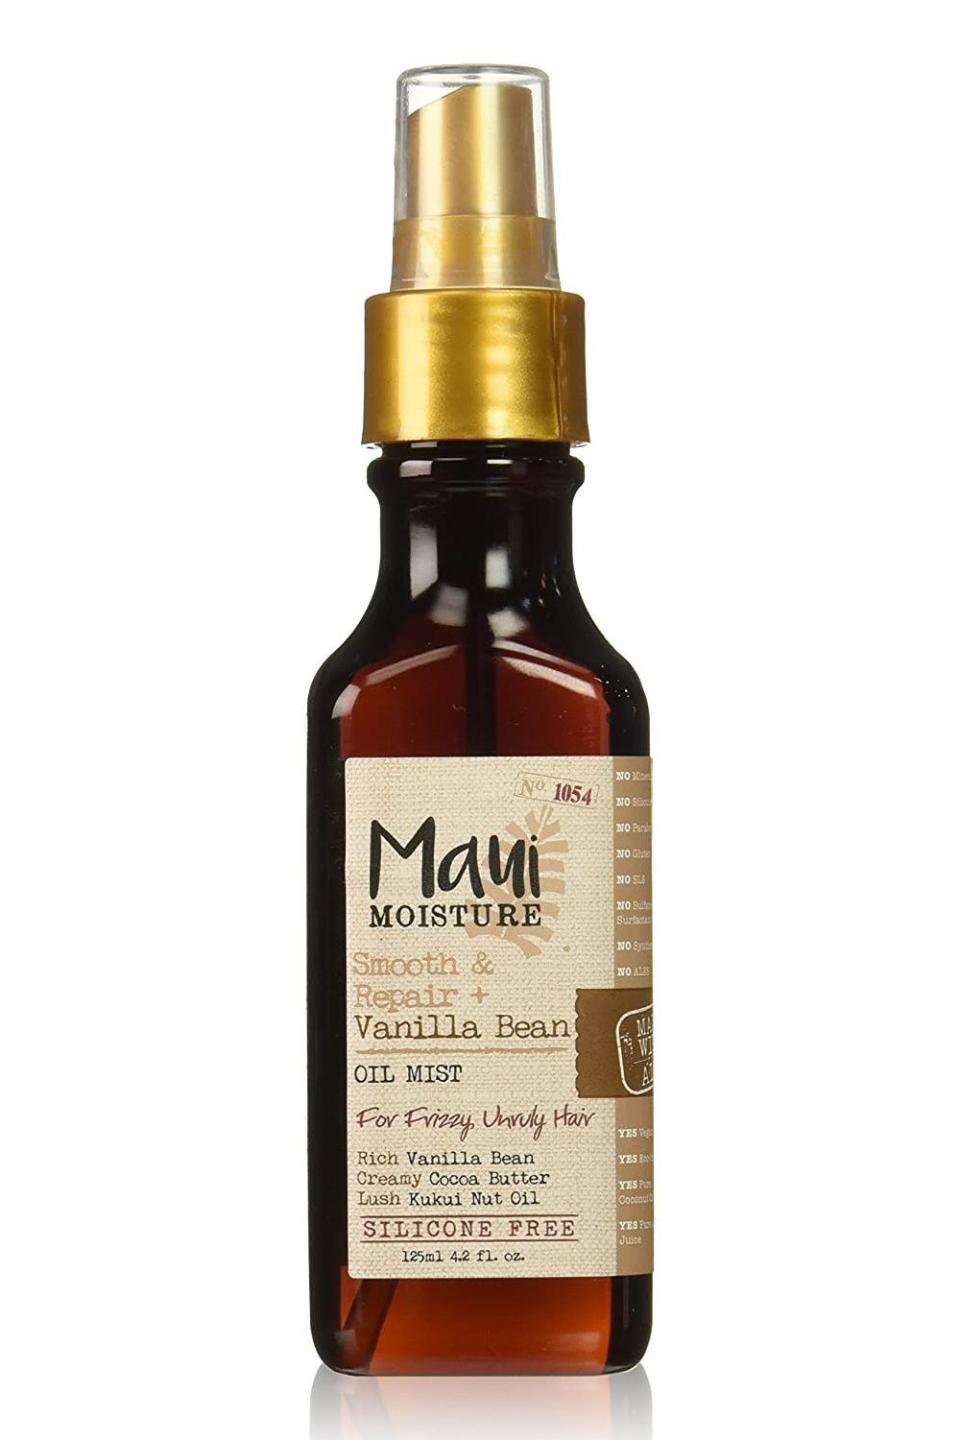 6) Maui Moisture Smooth & Repair + Vanilla Bean Oil Mist